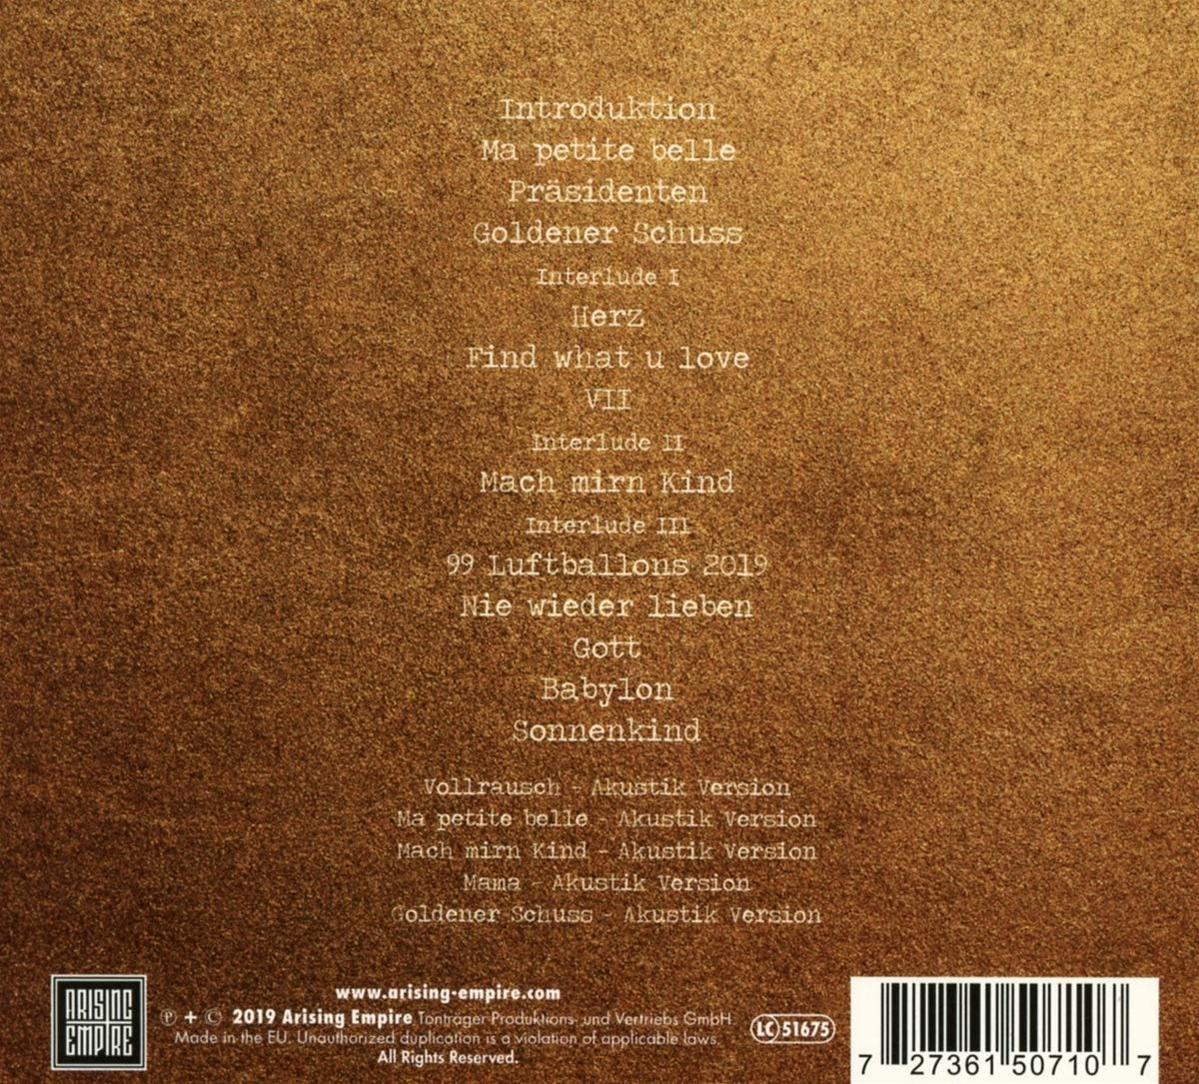 Schuss (CD) Antiheld Goldener - -